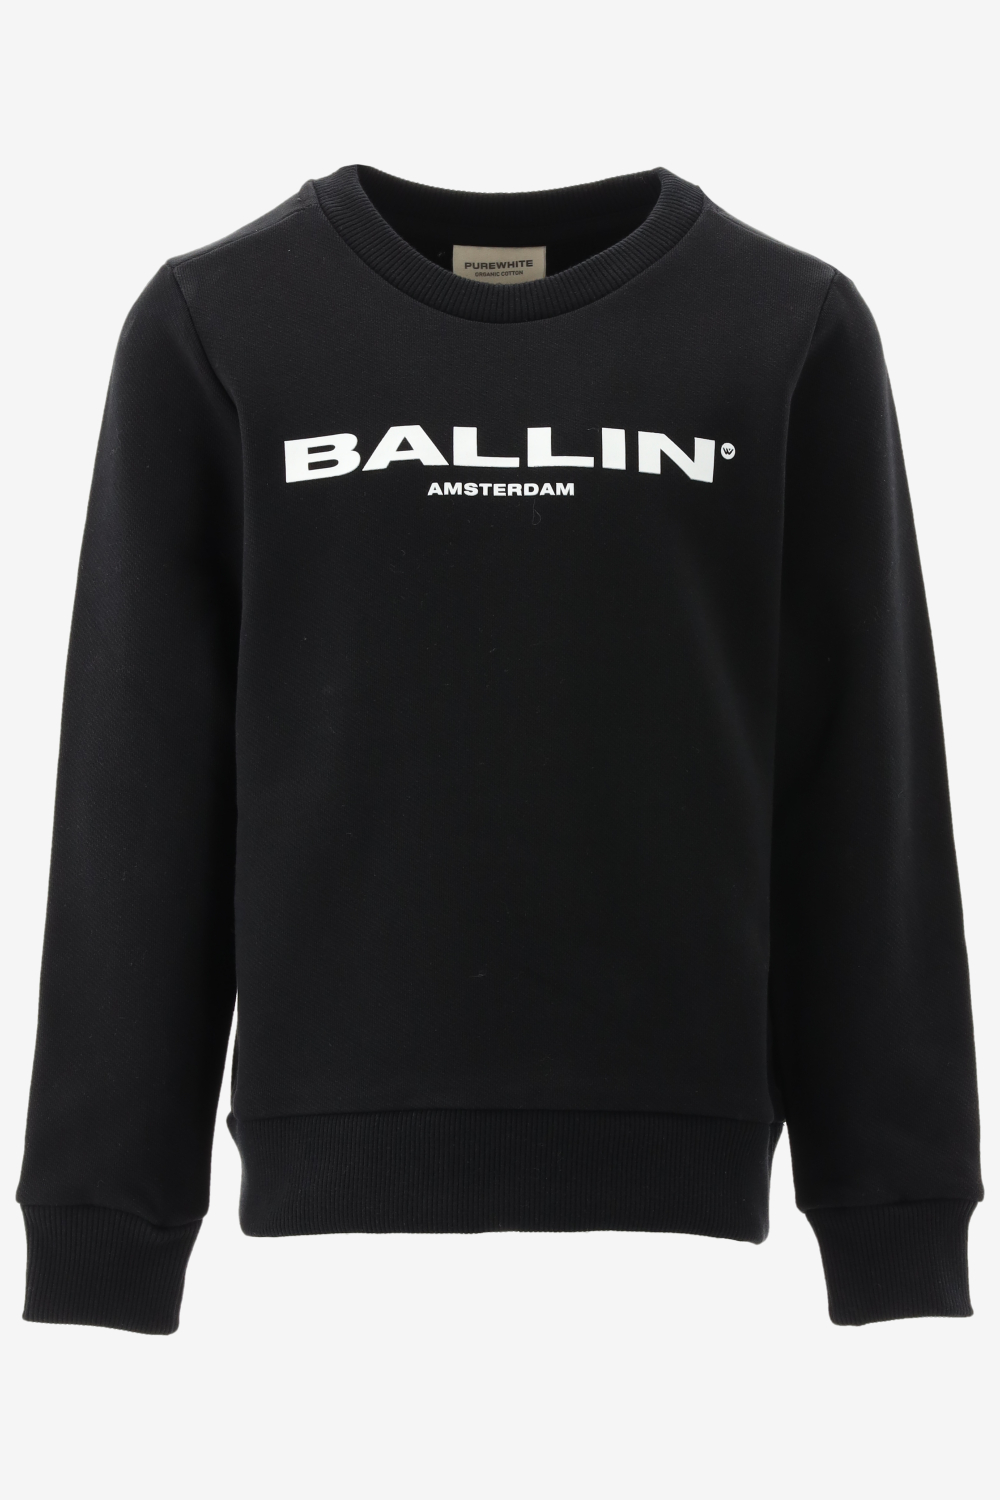 Ballin sweater maat 116/6J